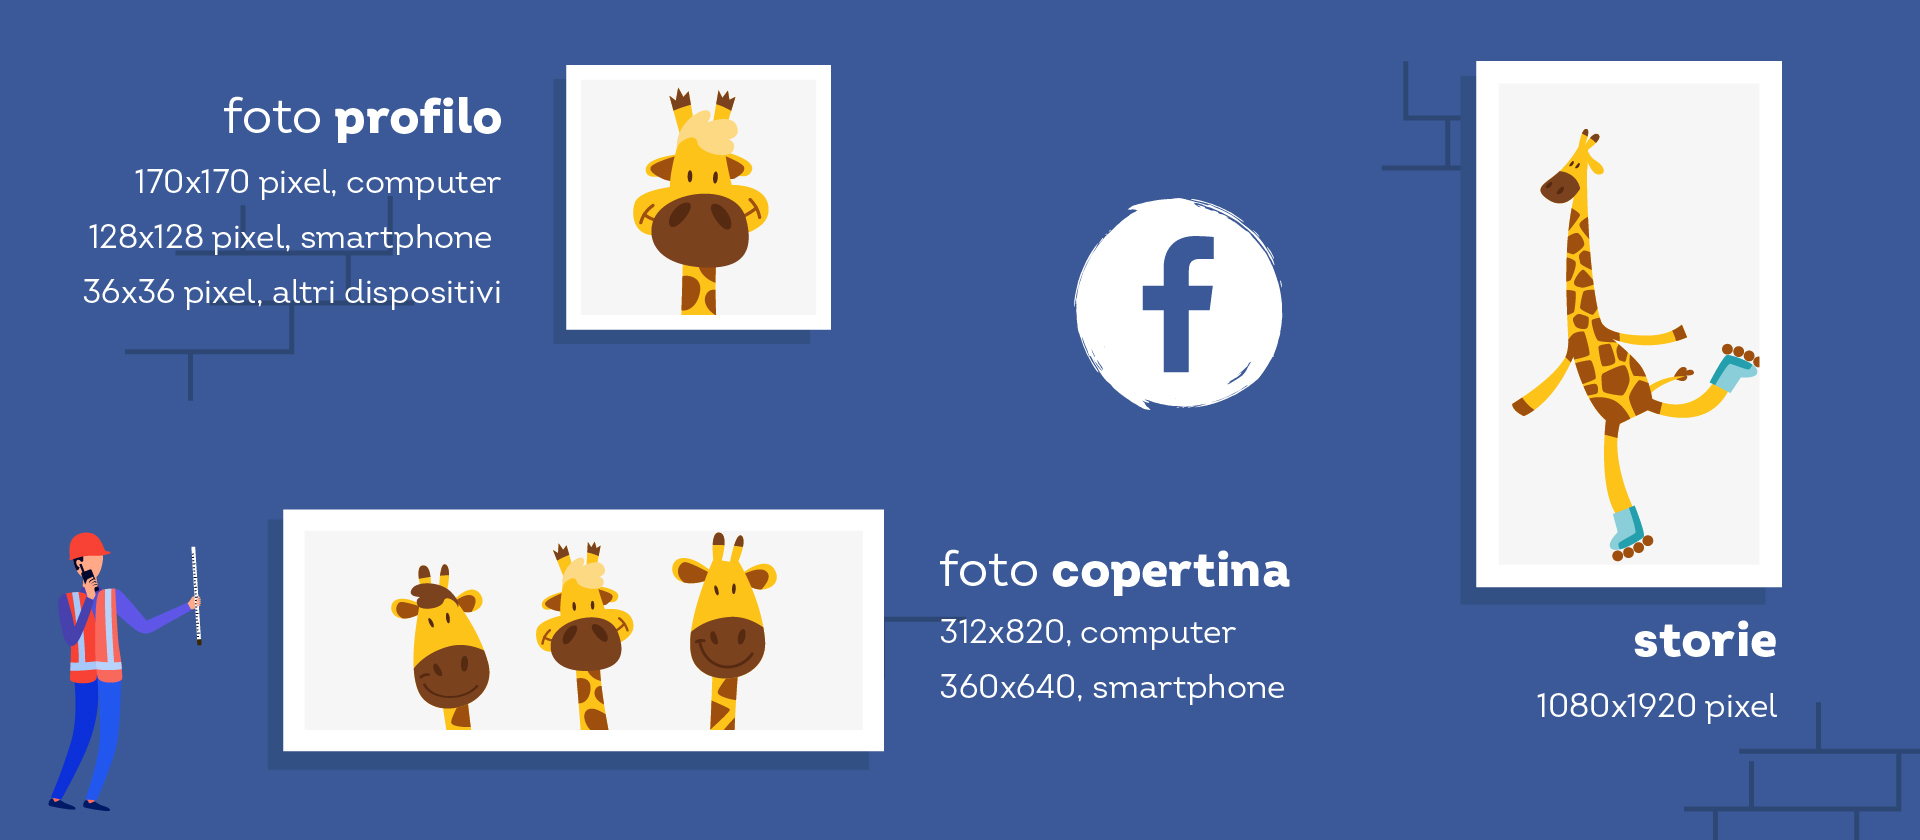 dimensioni foto profilo e copertina facebook 2020-1